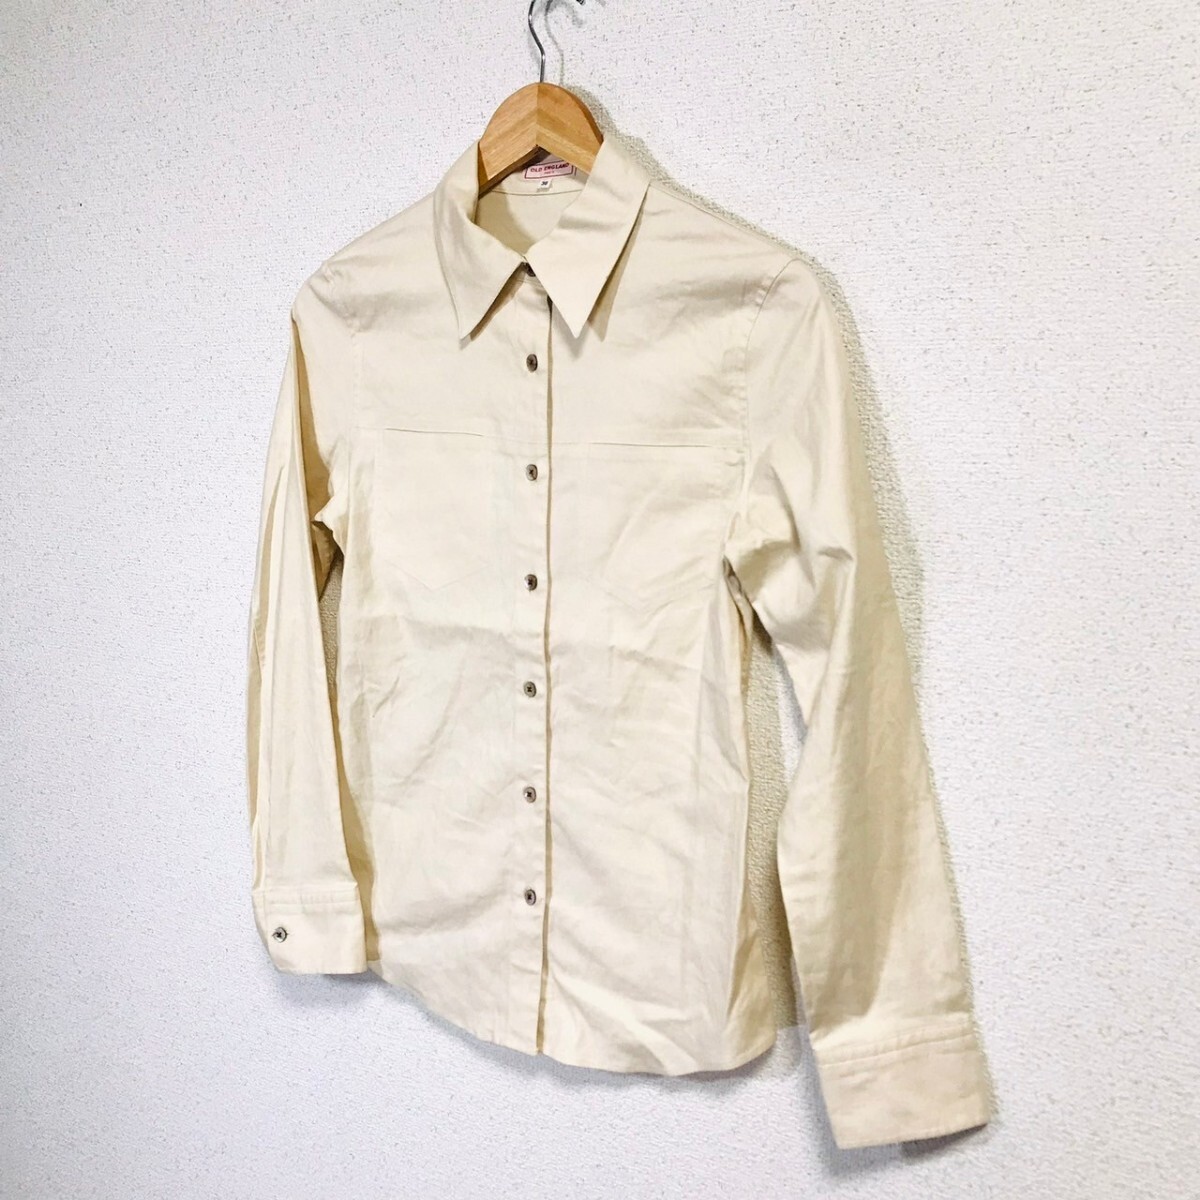 H8467dL сделано в Японии OLD ENGLAND PARIS Старая Англия размер 38 (M ранг ) рубашка с длинным рукавом блуза оттенок бежевого женский ракушка кнопка 